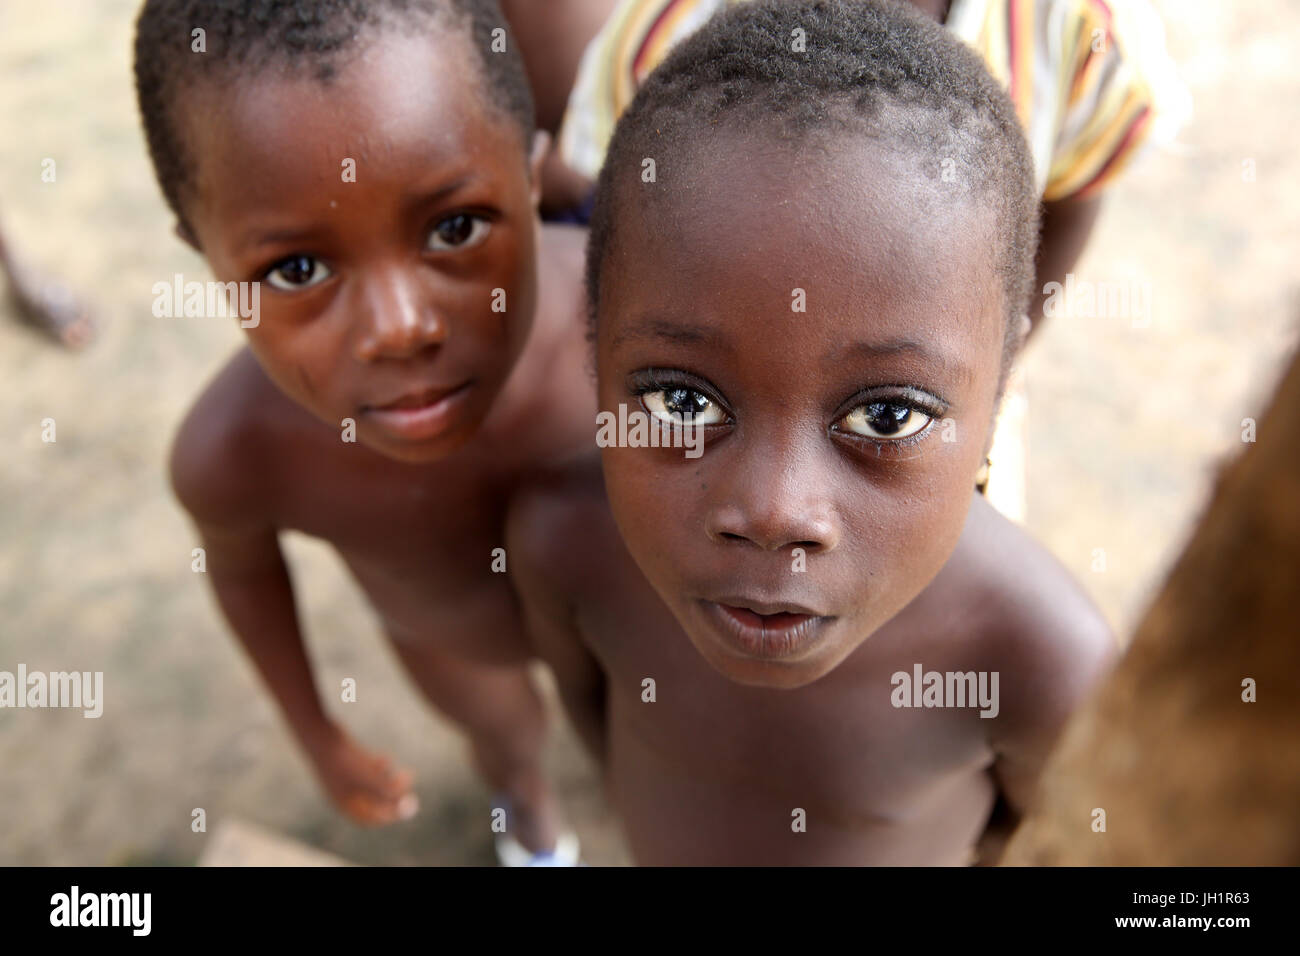 Enfants Africains dans un village. Le Togo. Banque D'Images